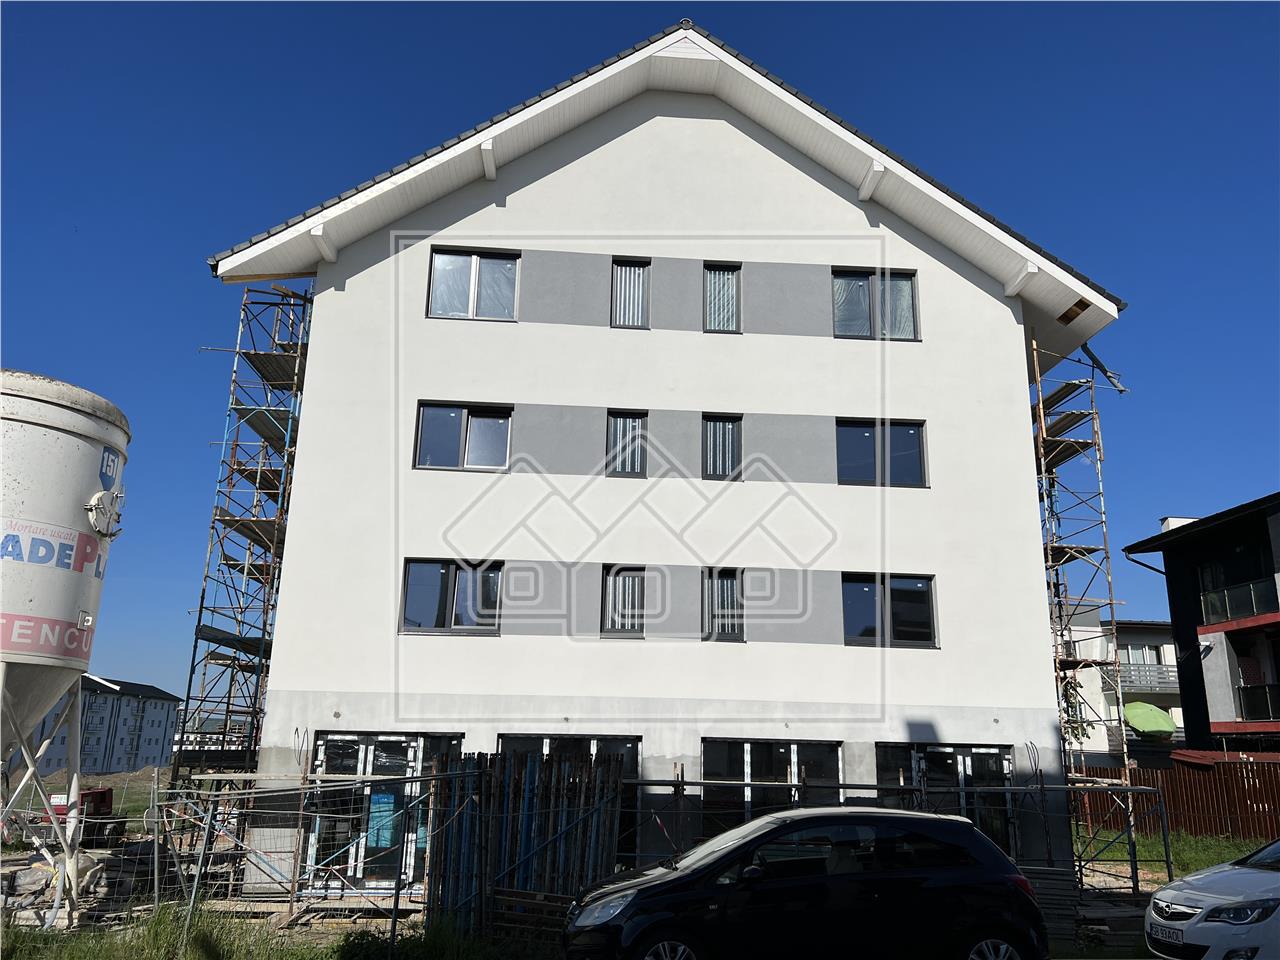 Wohnung zu verkaufen in Sibiu - 2 Zimmer, Balkon 6,7 qm